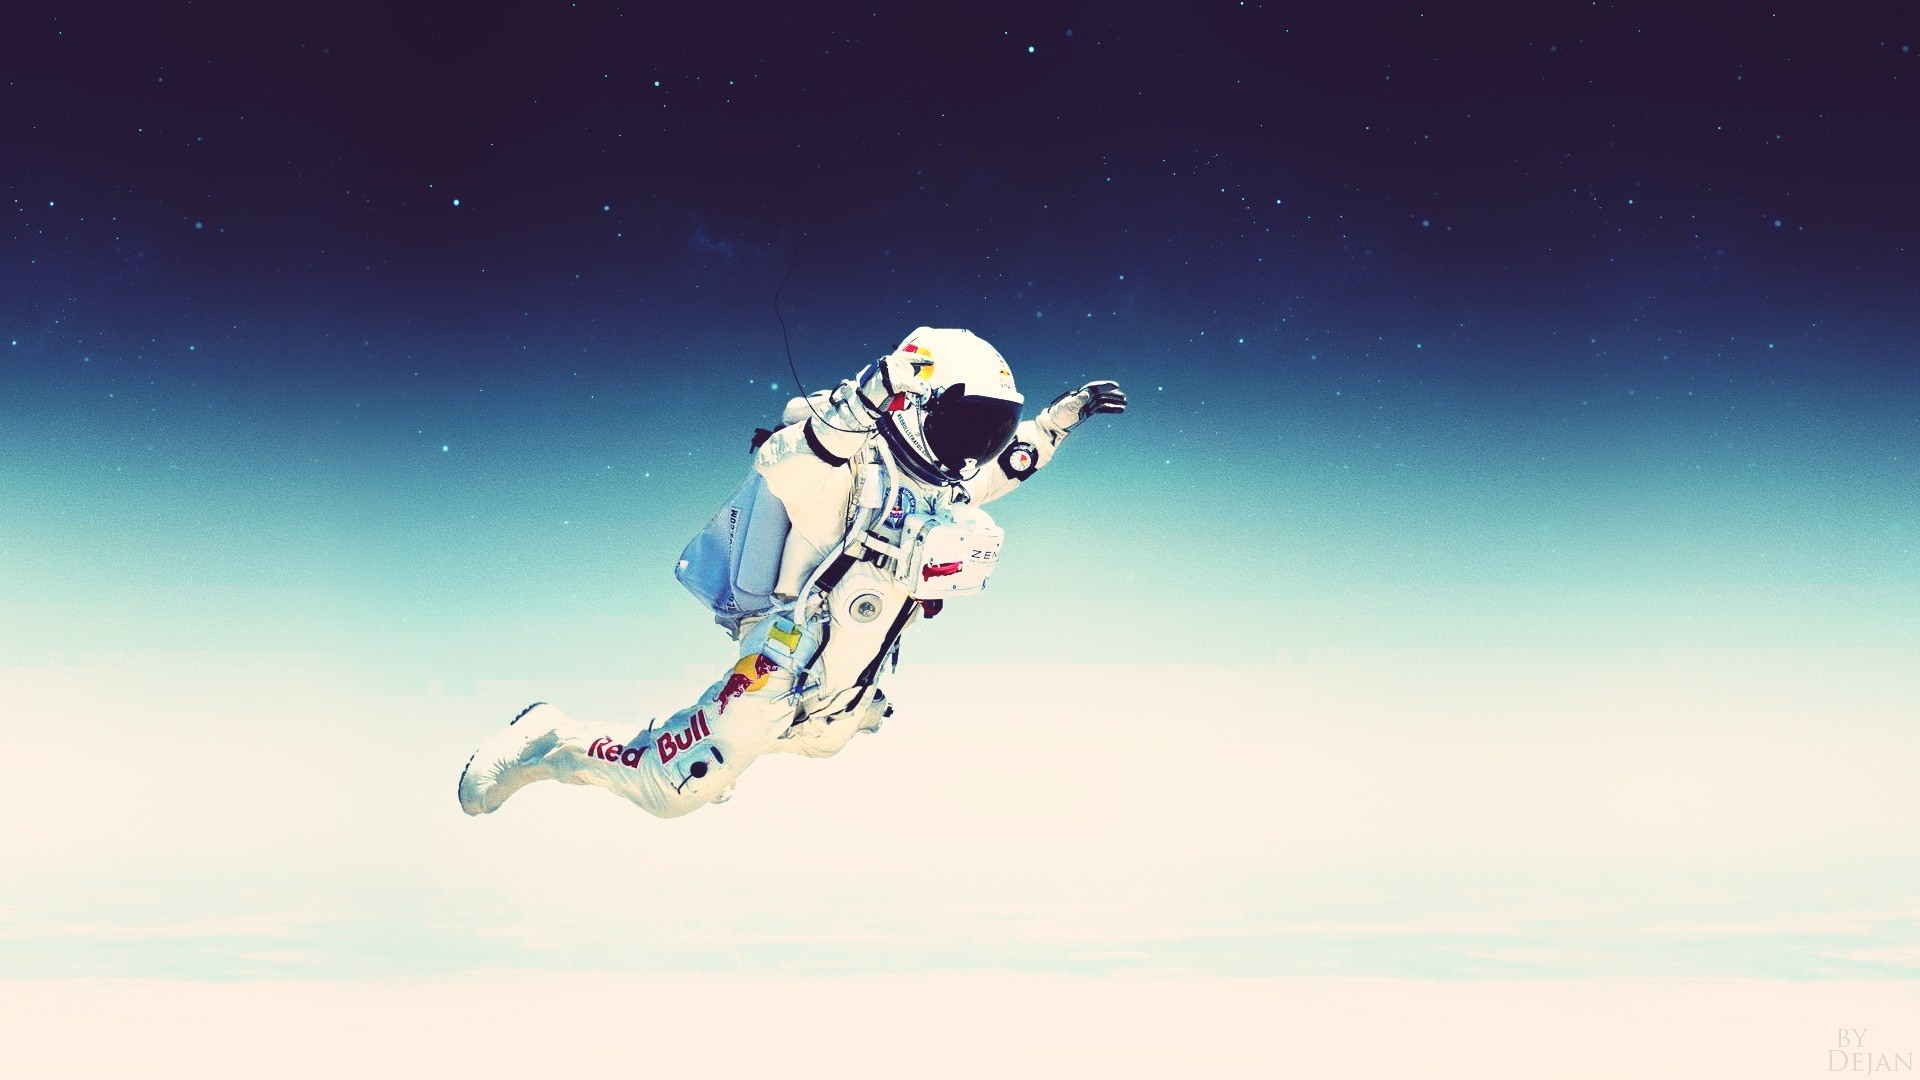 宇航员,自由落体,空间,天空壁纸